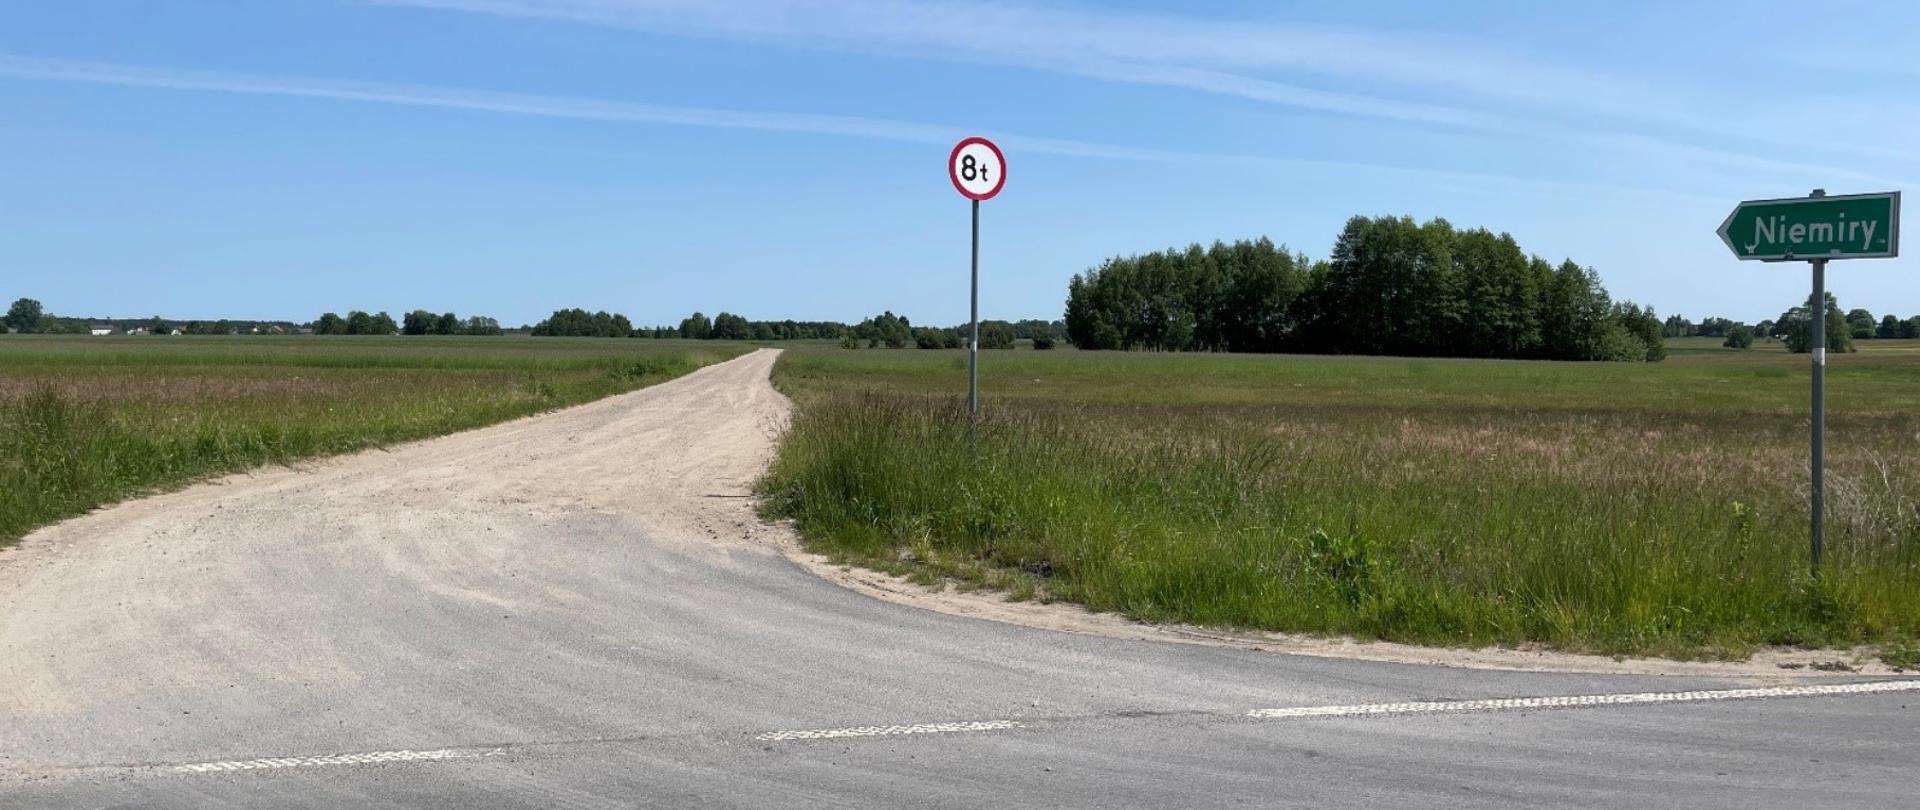 Droga żwirowa wśród łąk i pól. W prawej części zdjęcia znak w kształcie strzałki Niemiry ora zakaz wjazdu dla pojazdów powyżej 8t.